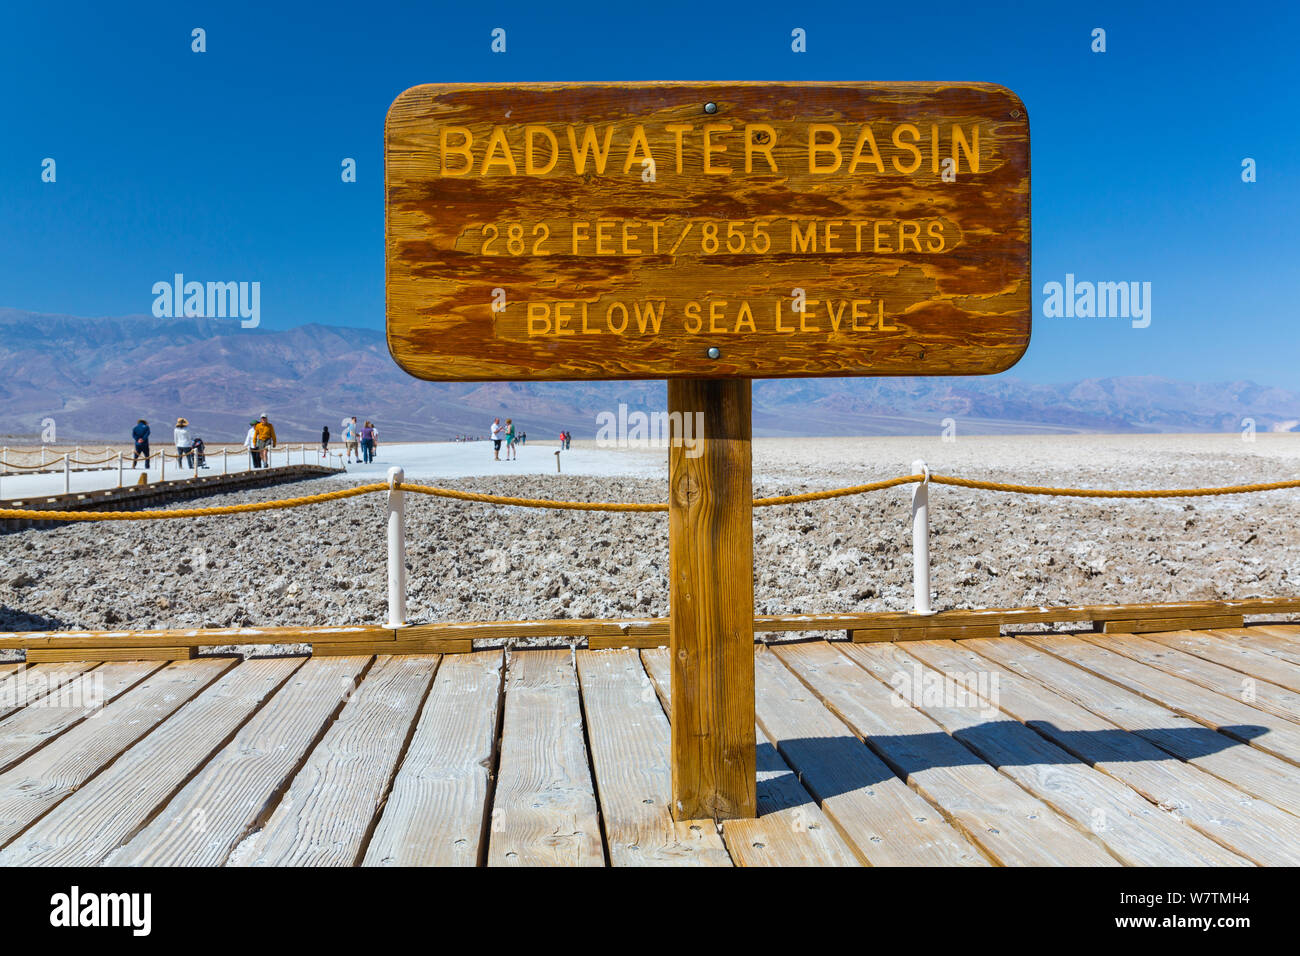 Zeichen für Badwater Basin, das Tiefste in Nordamerika, Death Valley National Park, Kalifornien, USA, März 2013. Stockfoto